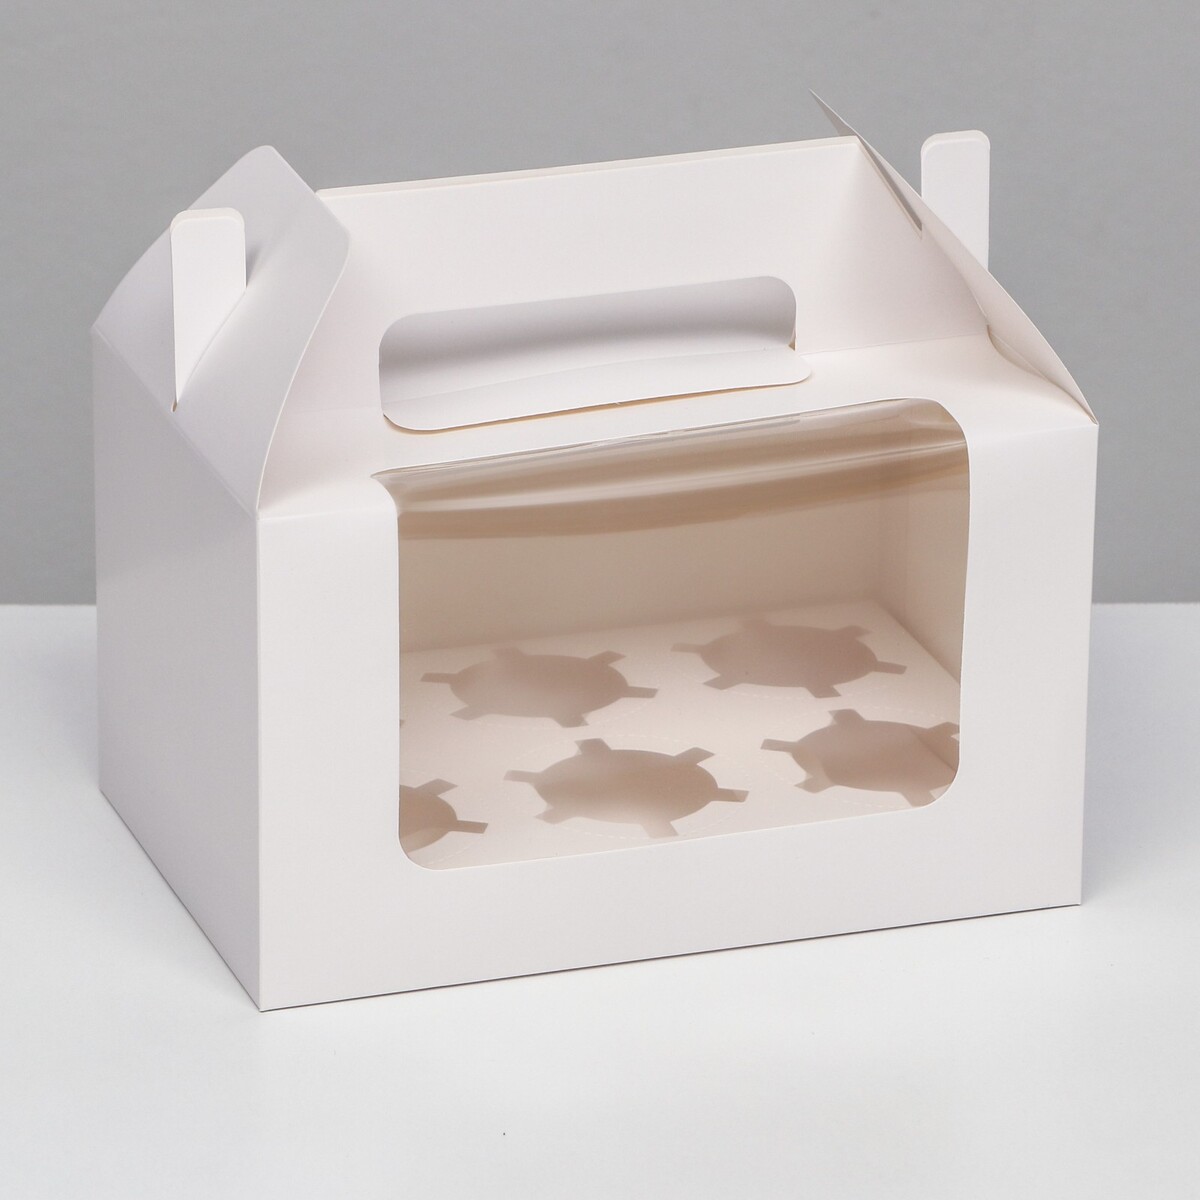 Кондитерская складная коробка для 6 капкейков, белая 23,5 х 16 х 14 см кондитерская складная коробка для 4 капкейков 16 х 16 х 10 серебро